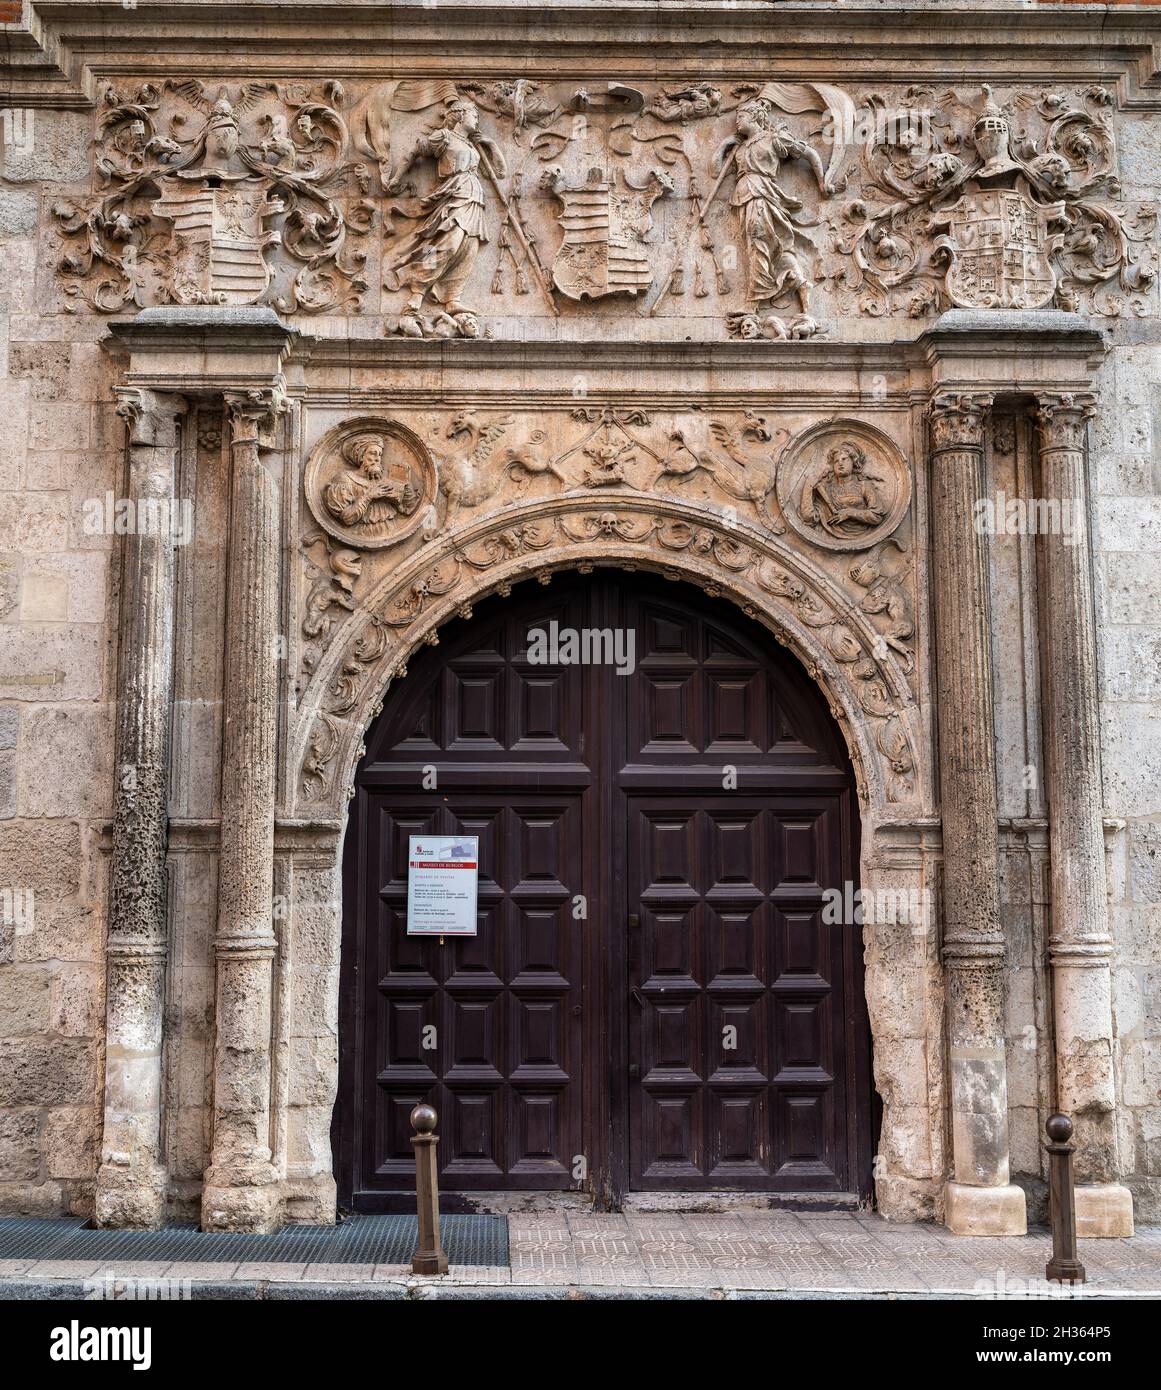 Facade of the Museum of Burgos, old Casa de Miranda, City of Burgos, Castilla y León, Spain Stock Photo